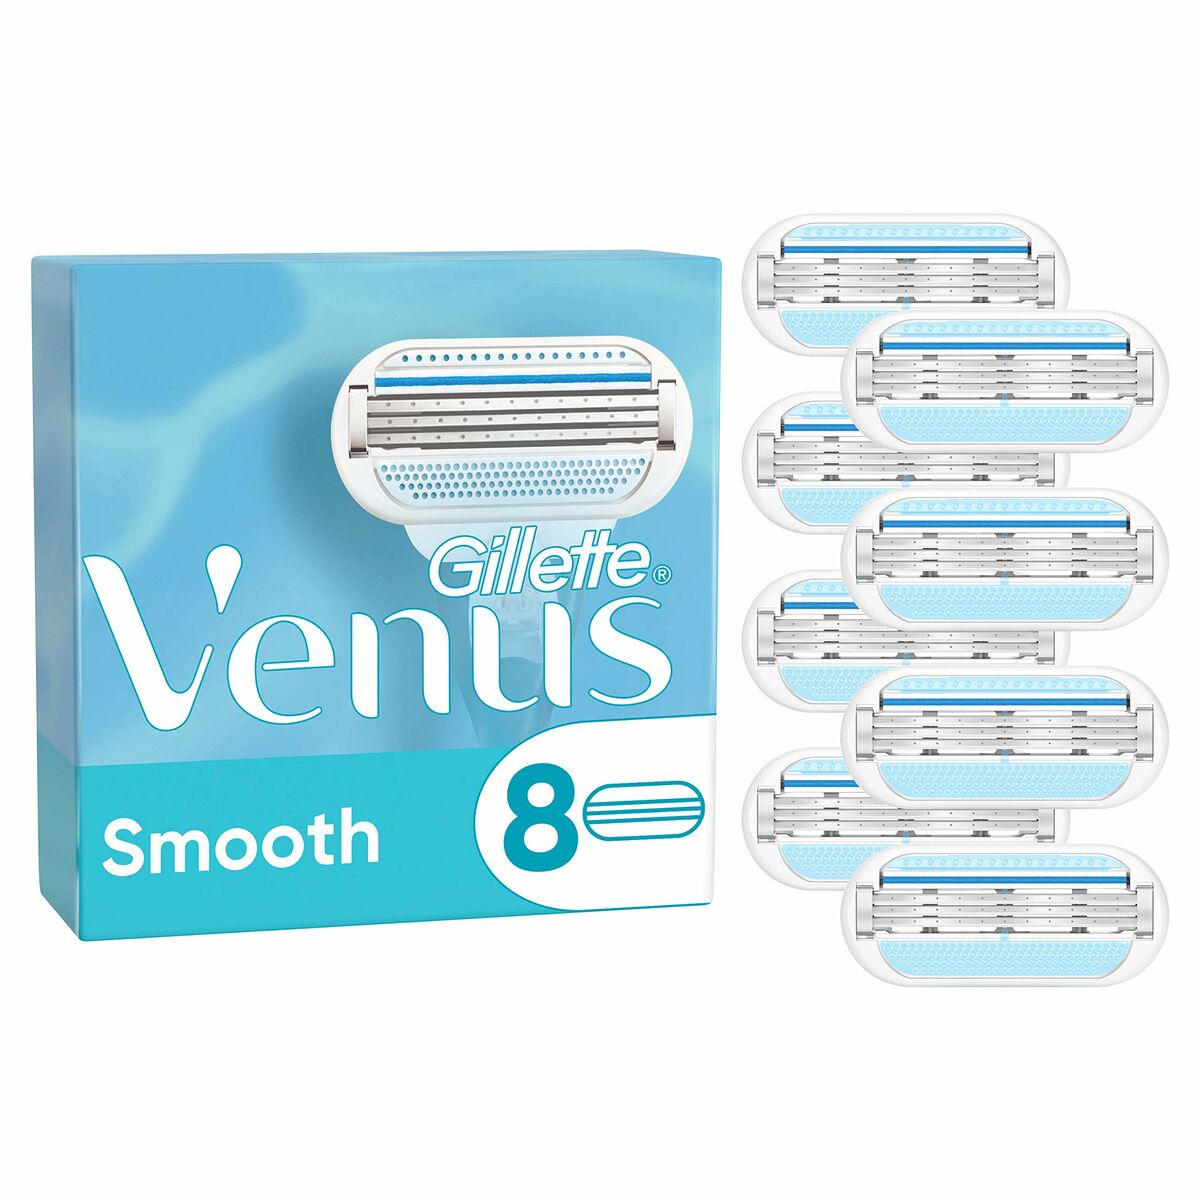 Shaving Razor Gillette Venus 8 Units